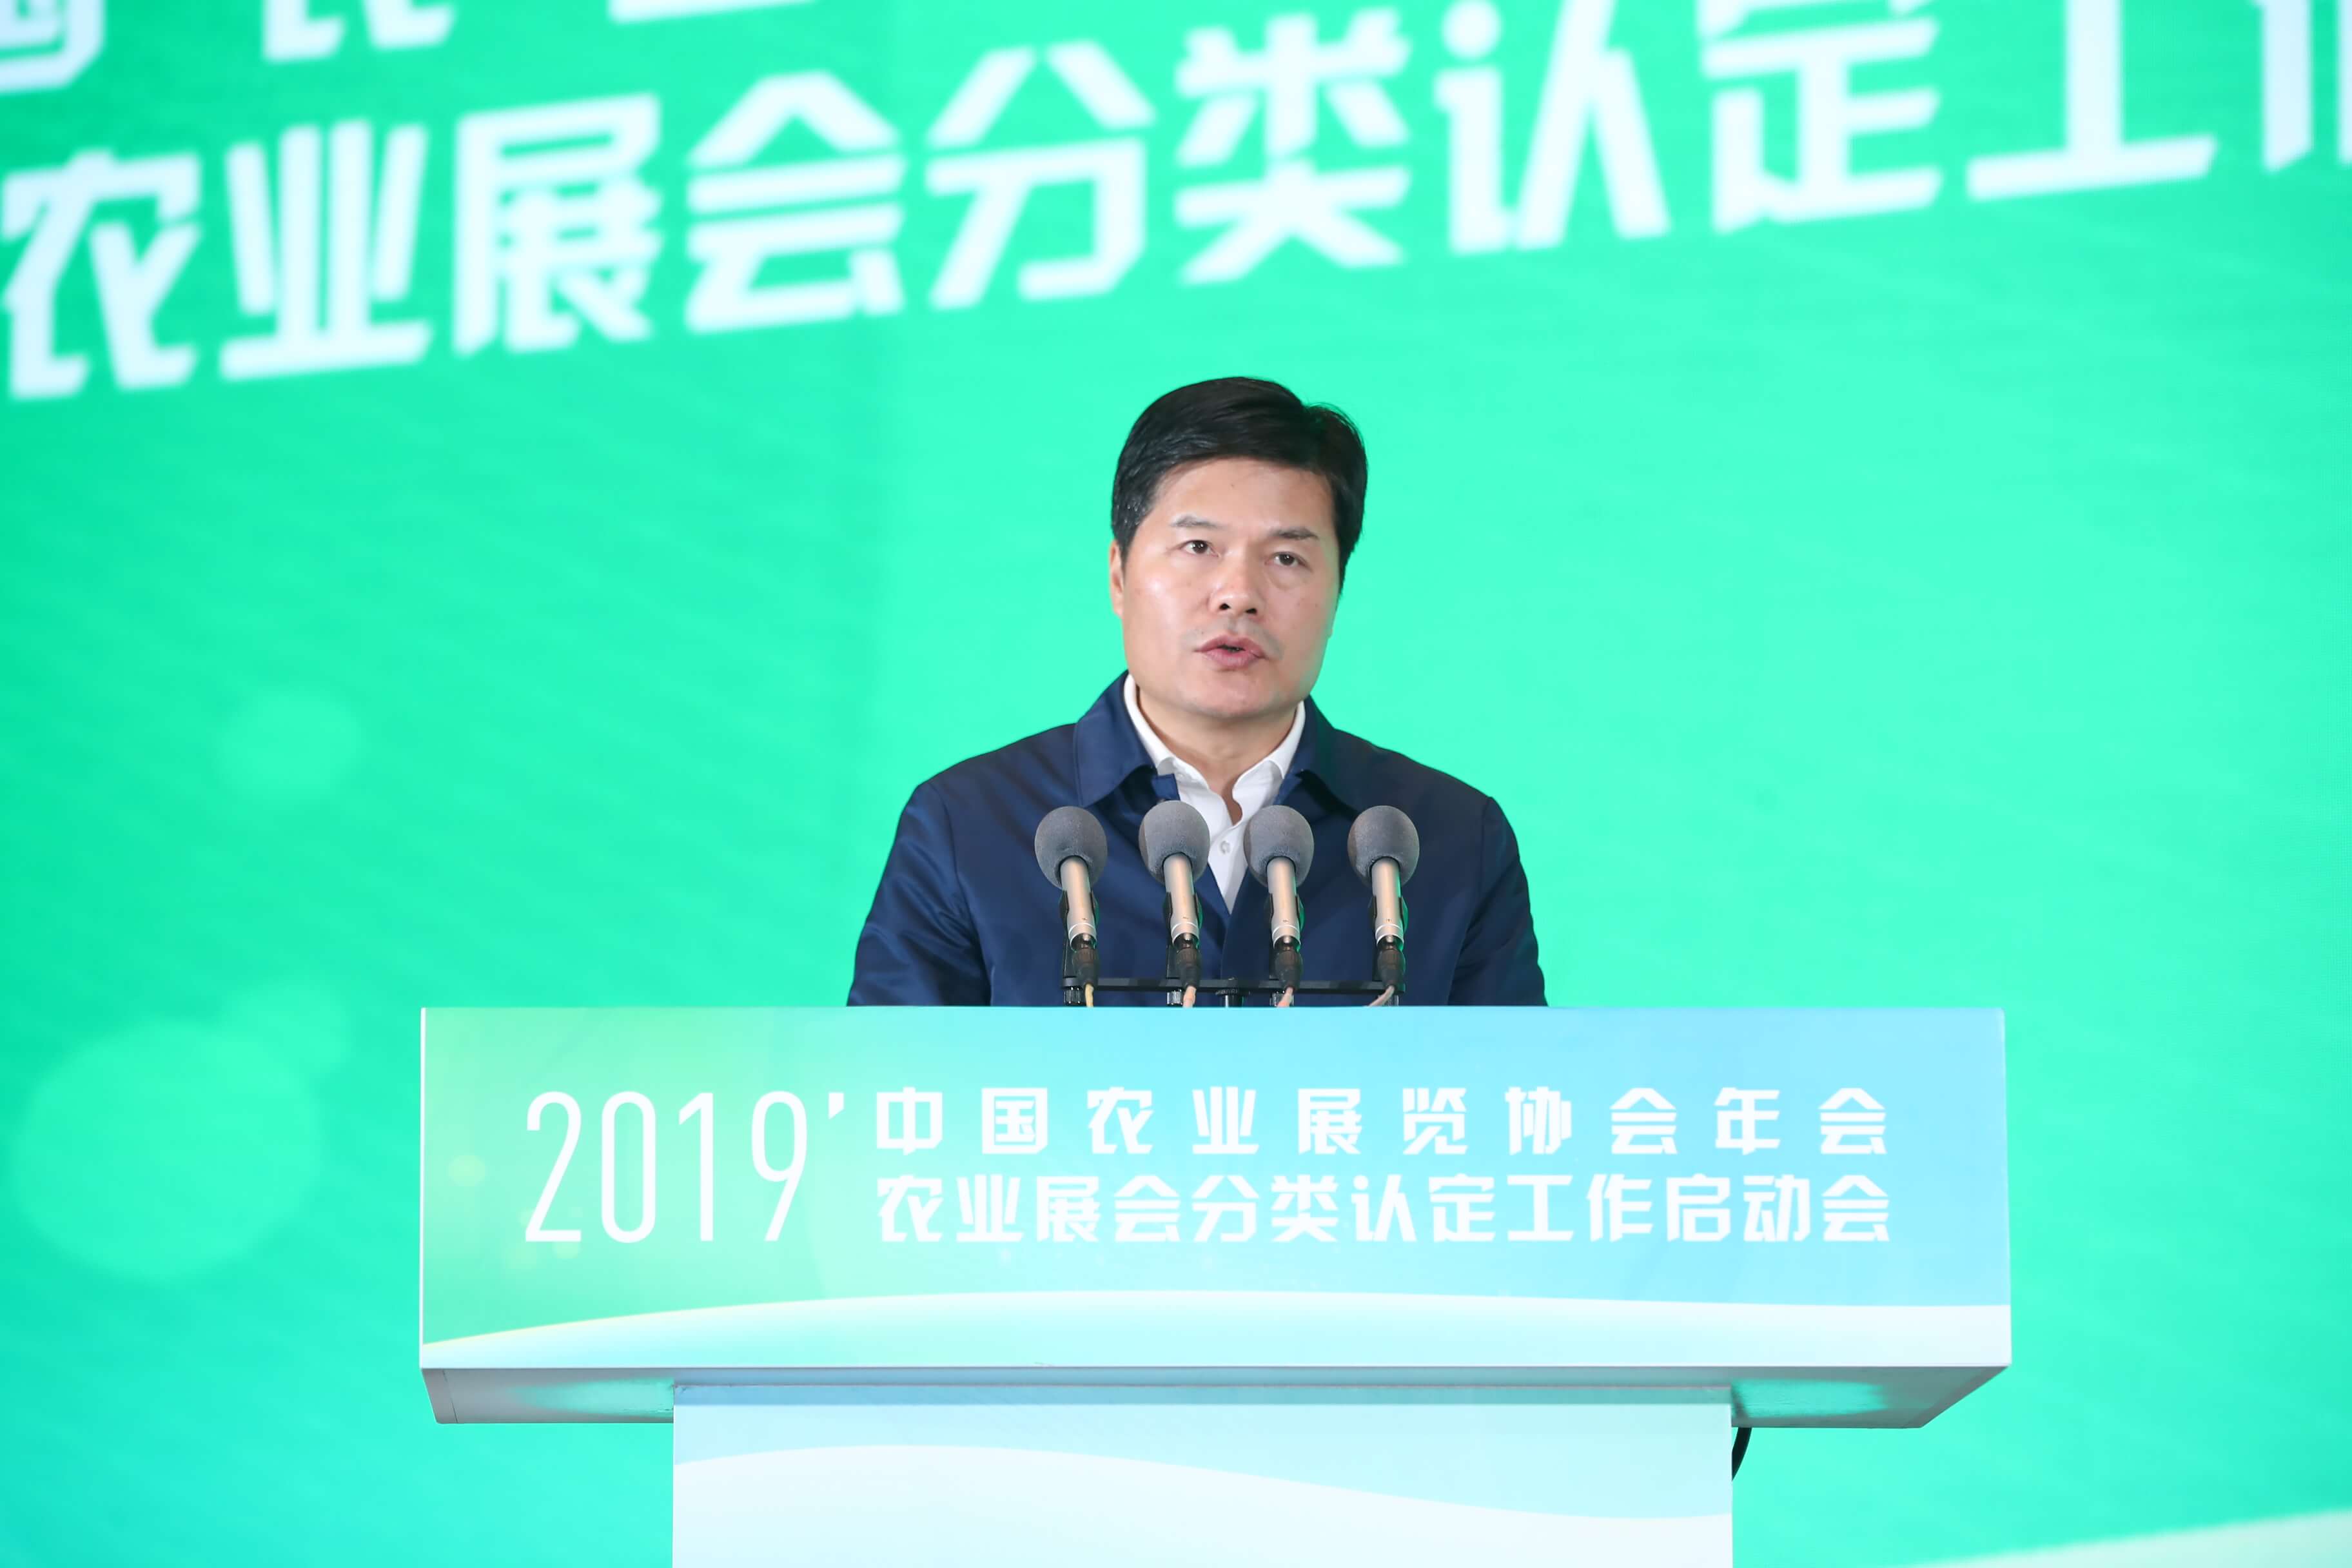 2019年中国农业展览协会年会暨中国农业展会分类认定工作启动会成功举办